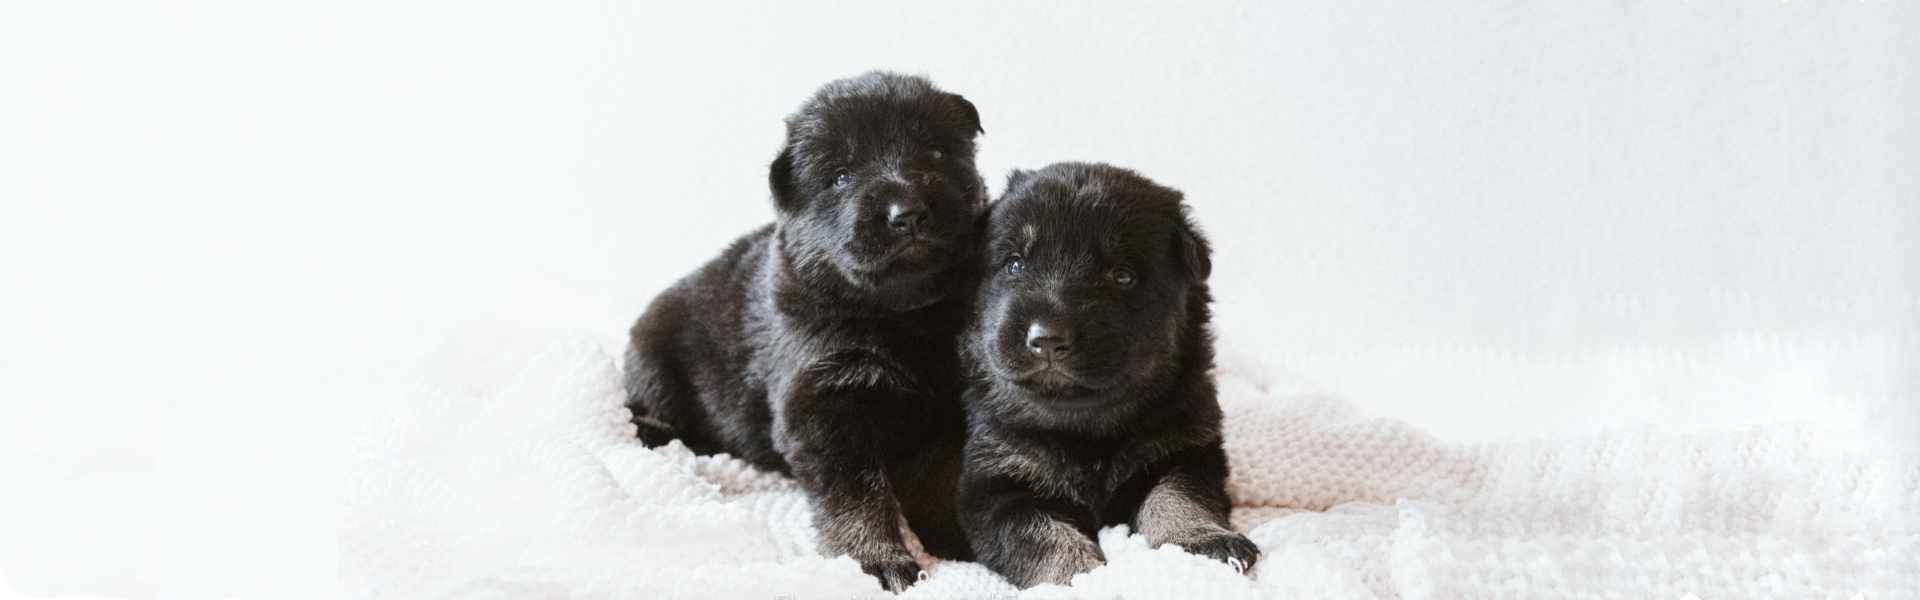 cuccioli-neri-ilpastoretedesco